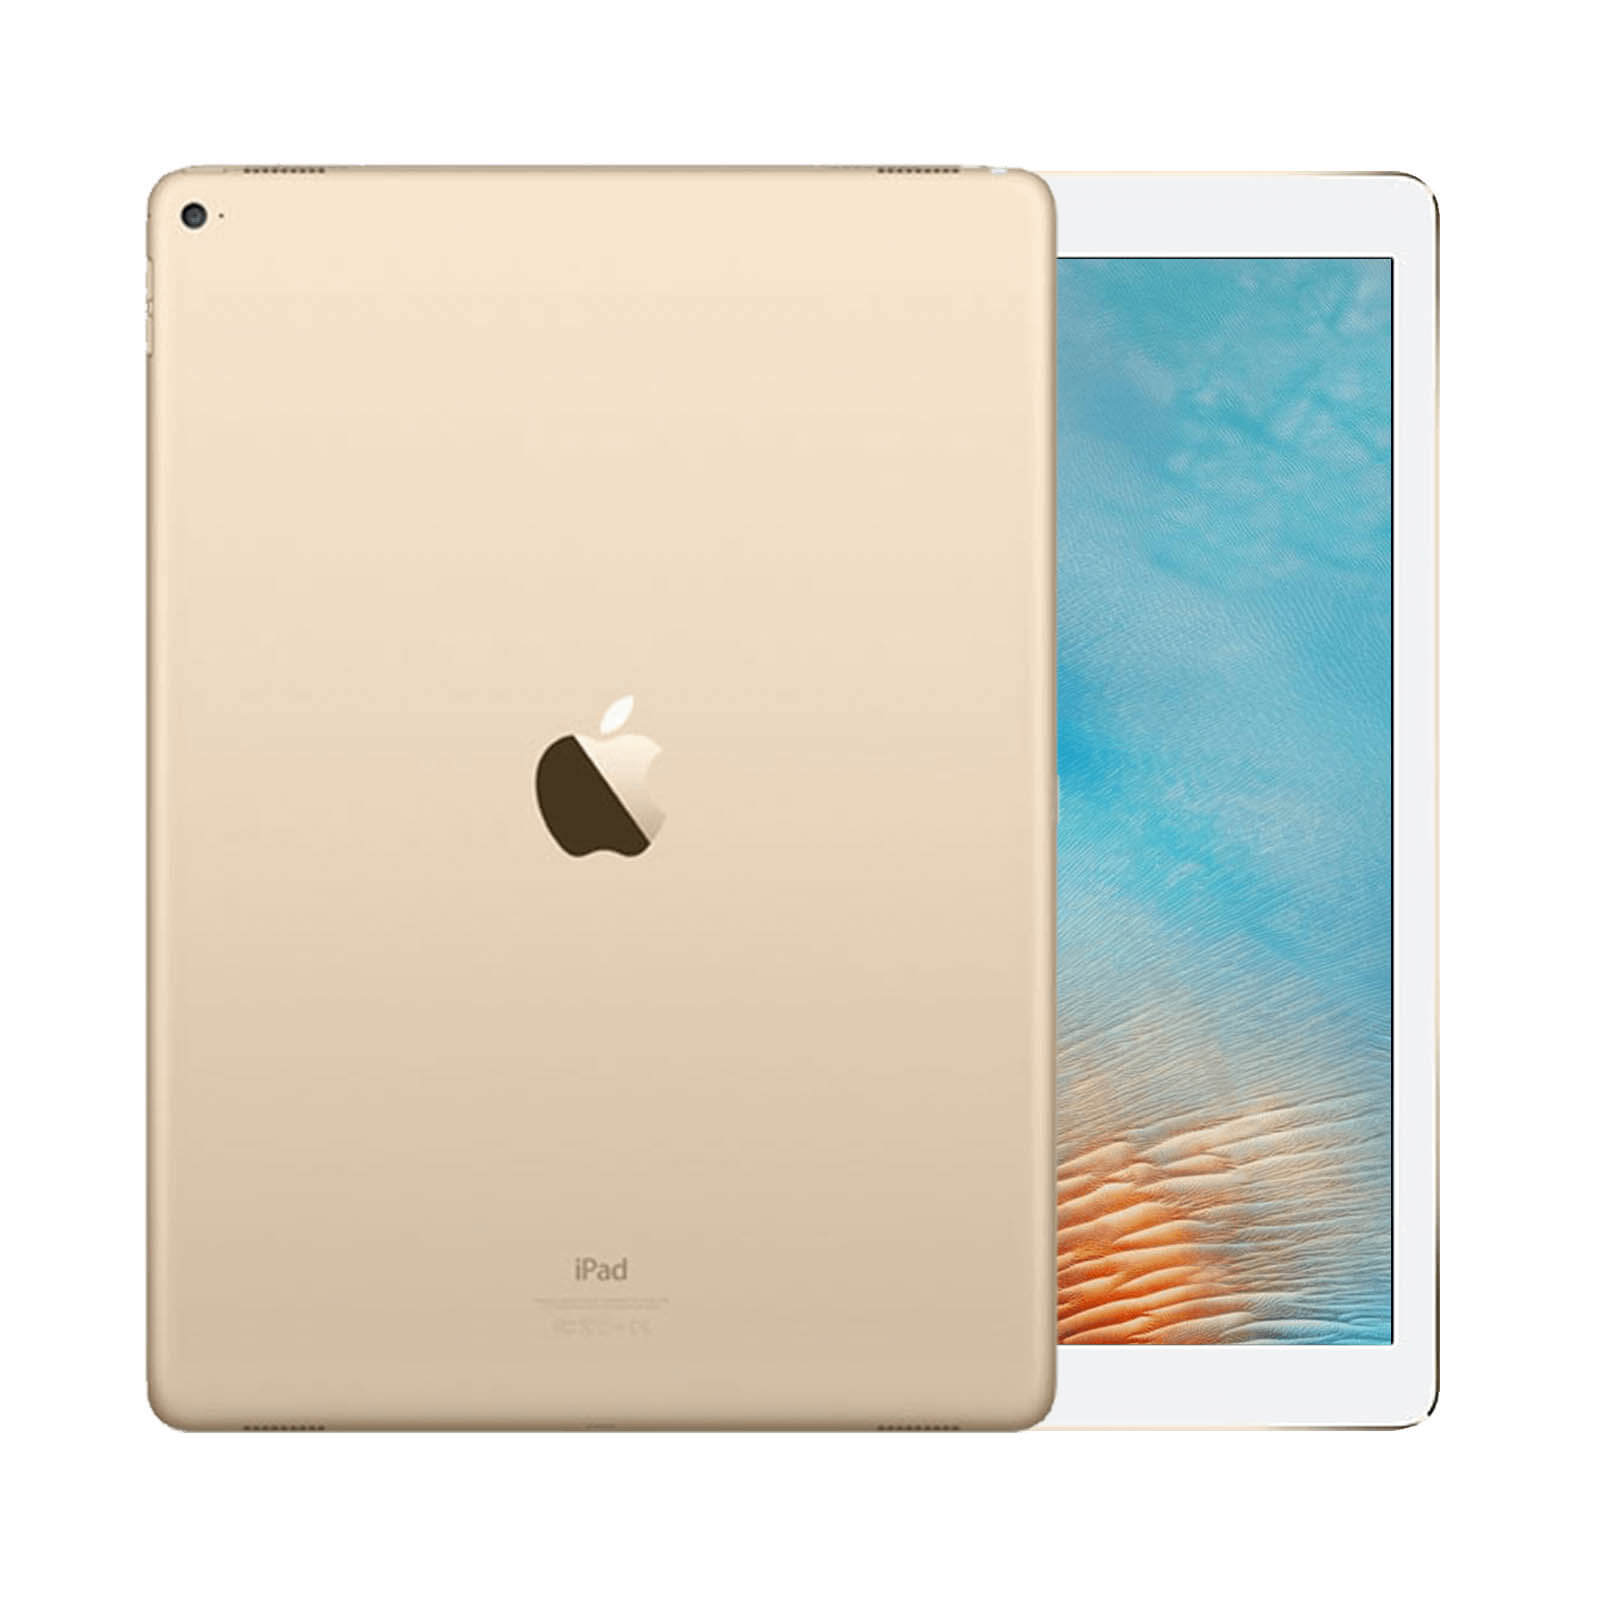 iPad Pro 12.9 Inch 1st Gen 128GB Gold Good - WiFi